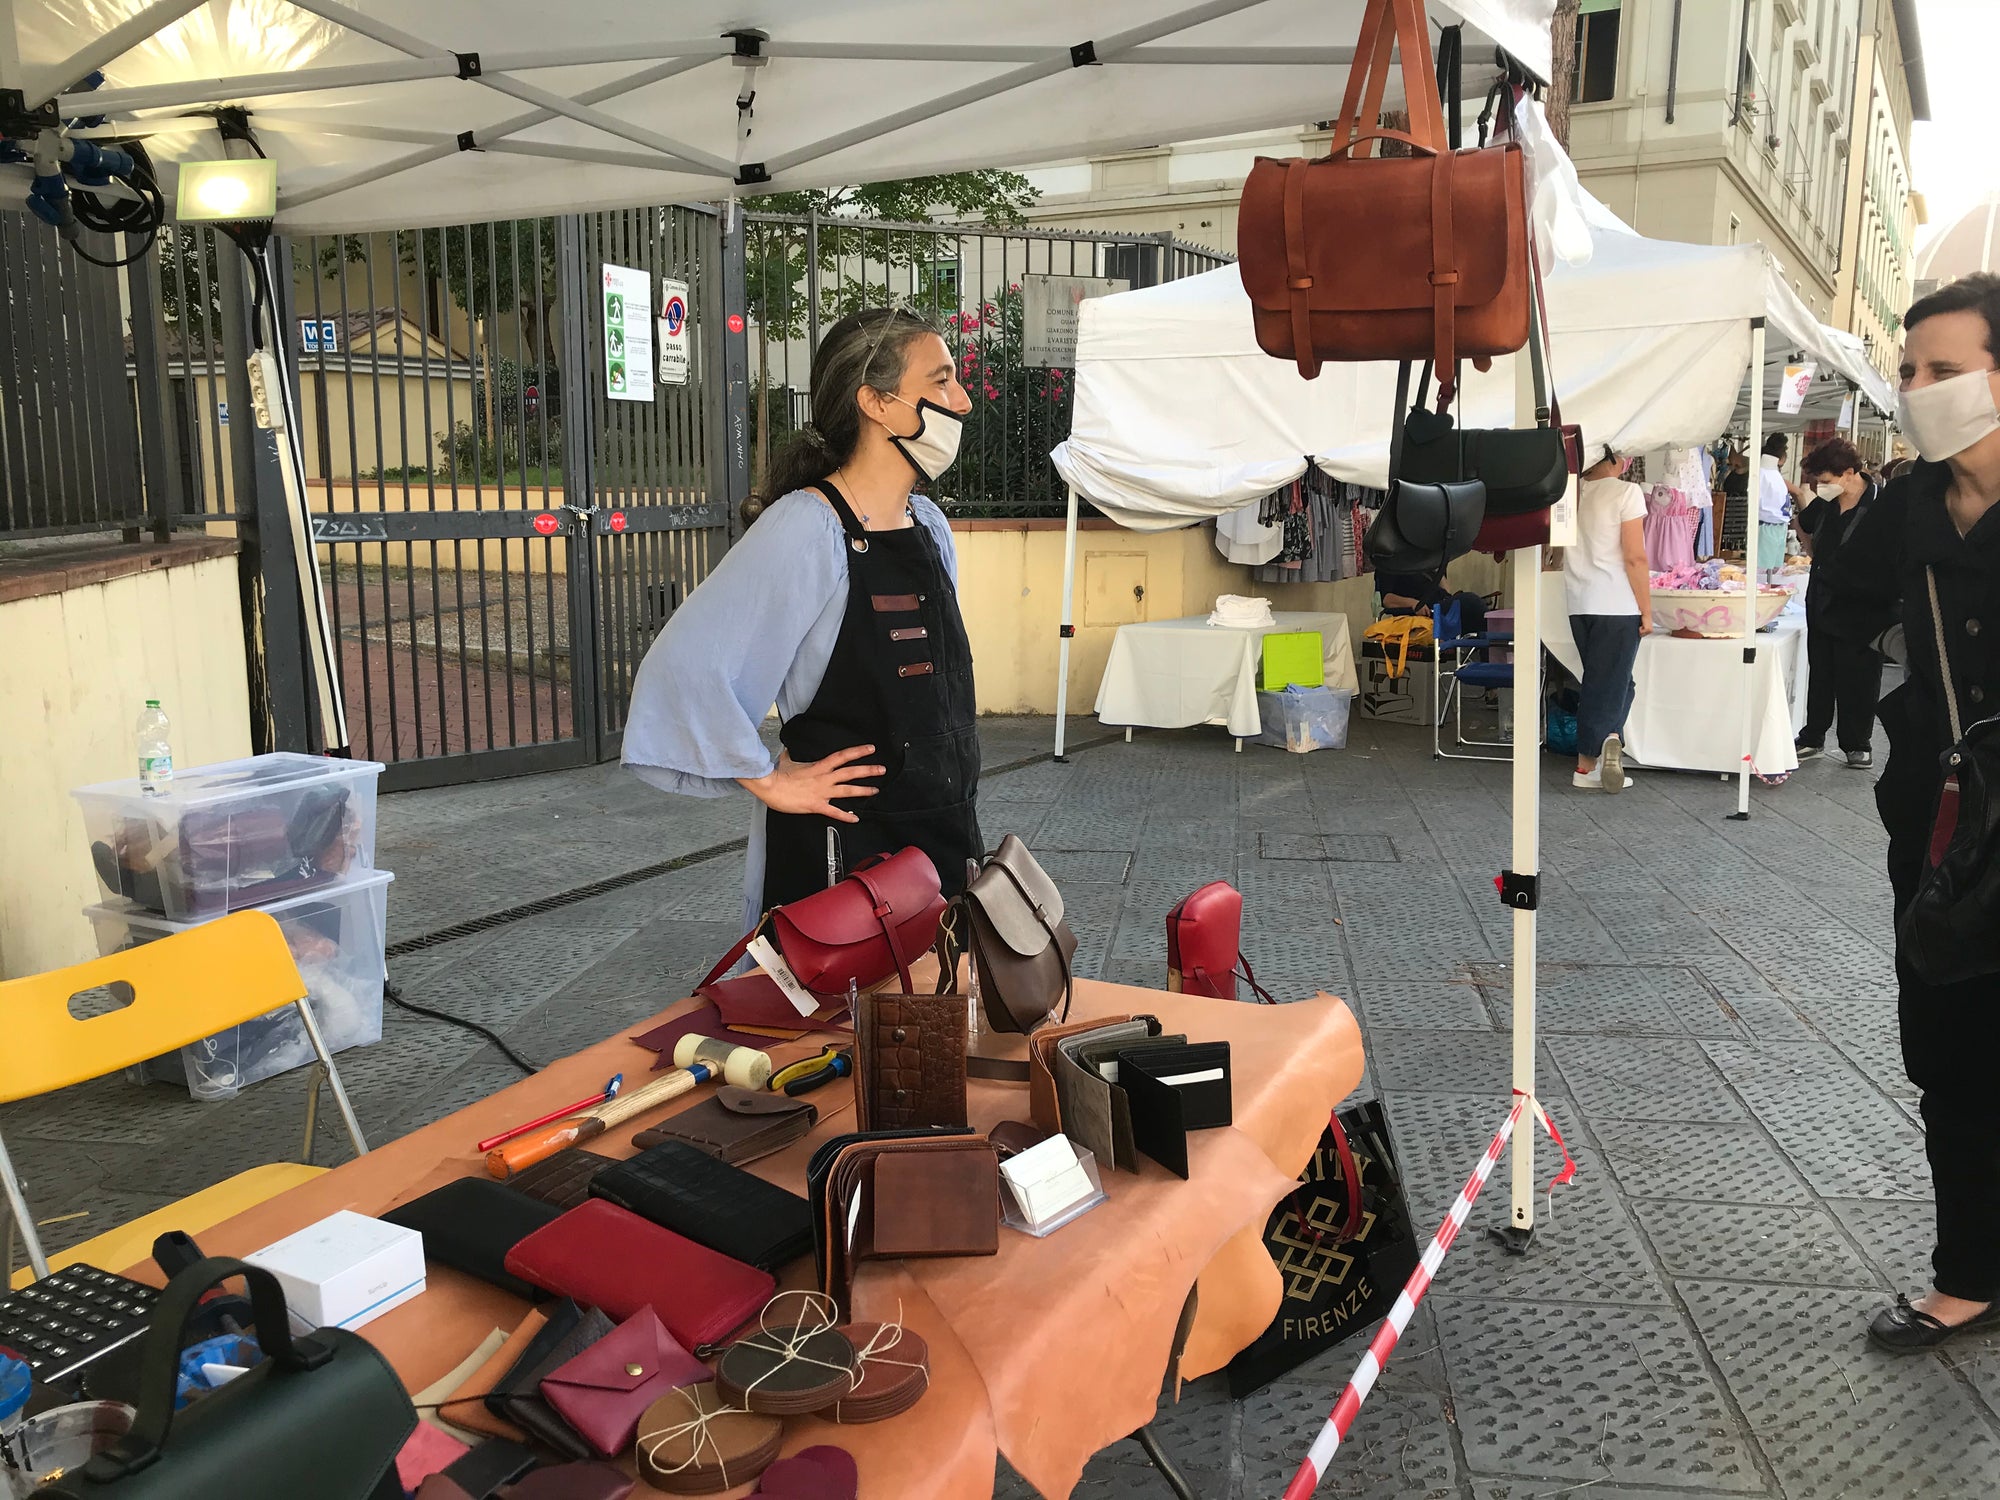 Fiera dell'Artigianato in piazza dei Ciompi a Firenze, Artefacendo; Craftmans market in Piazza dei Cimpi, Florence "Artefacendo"